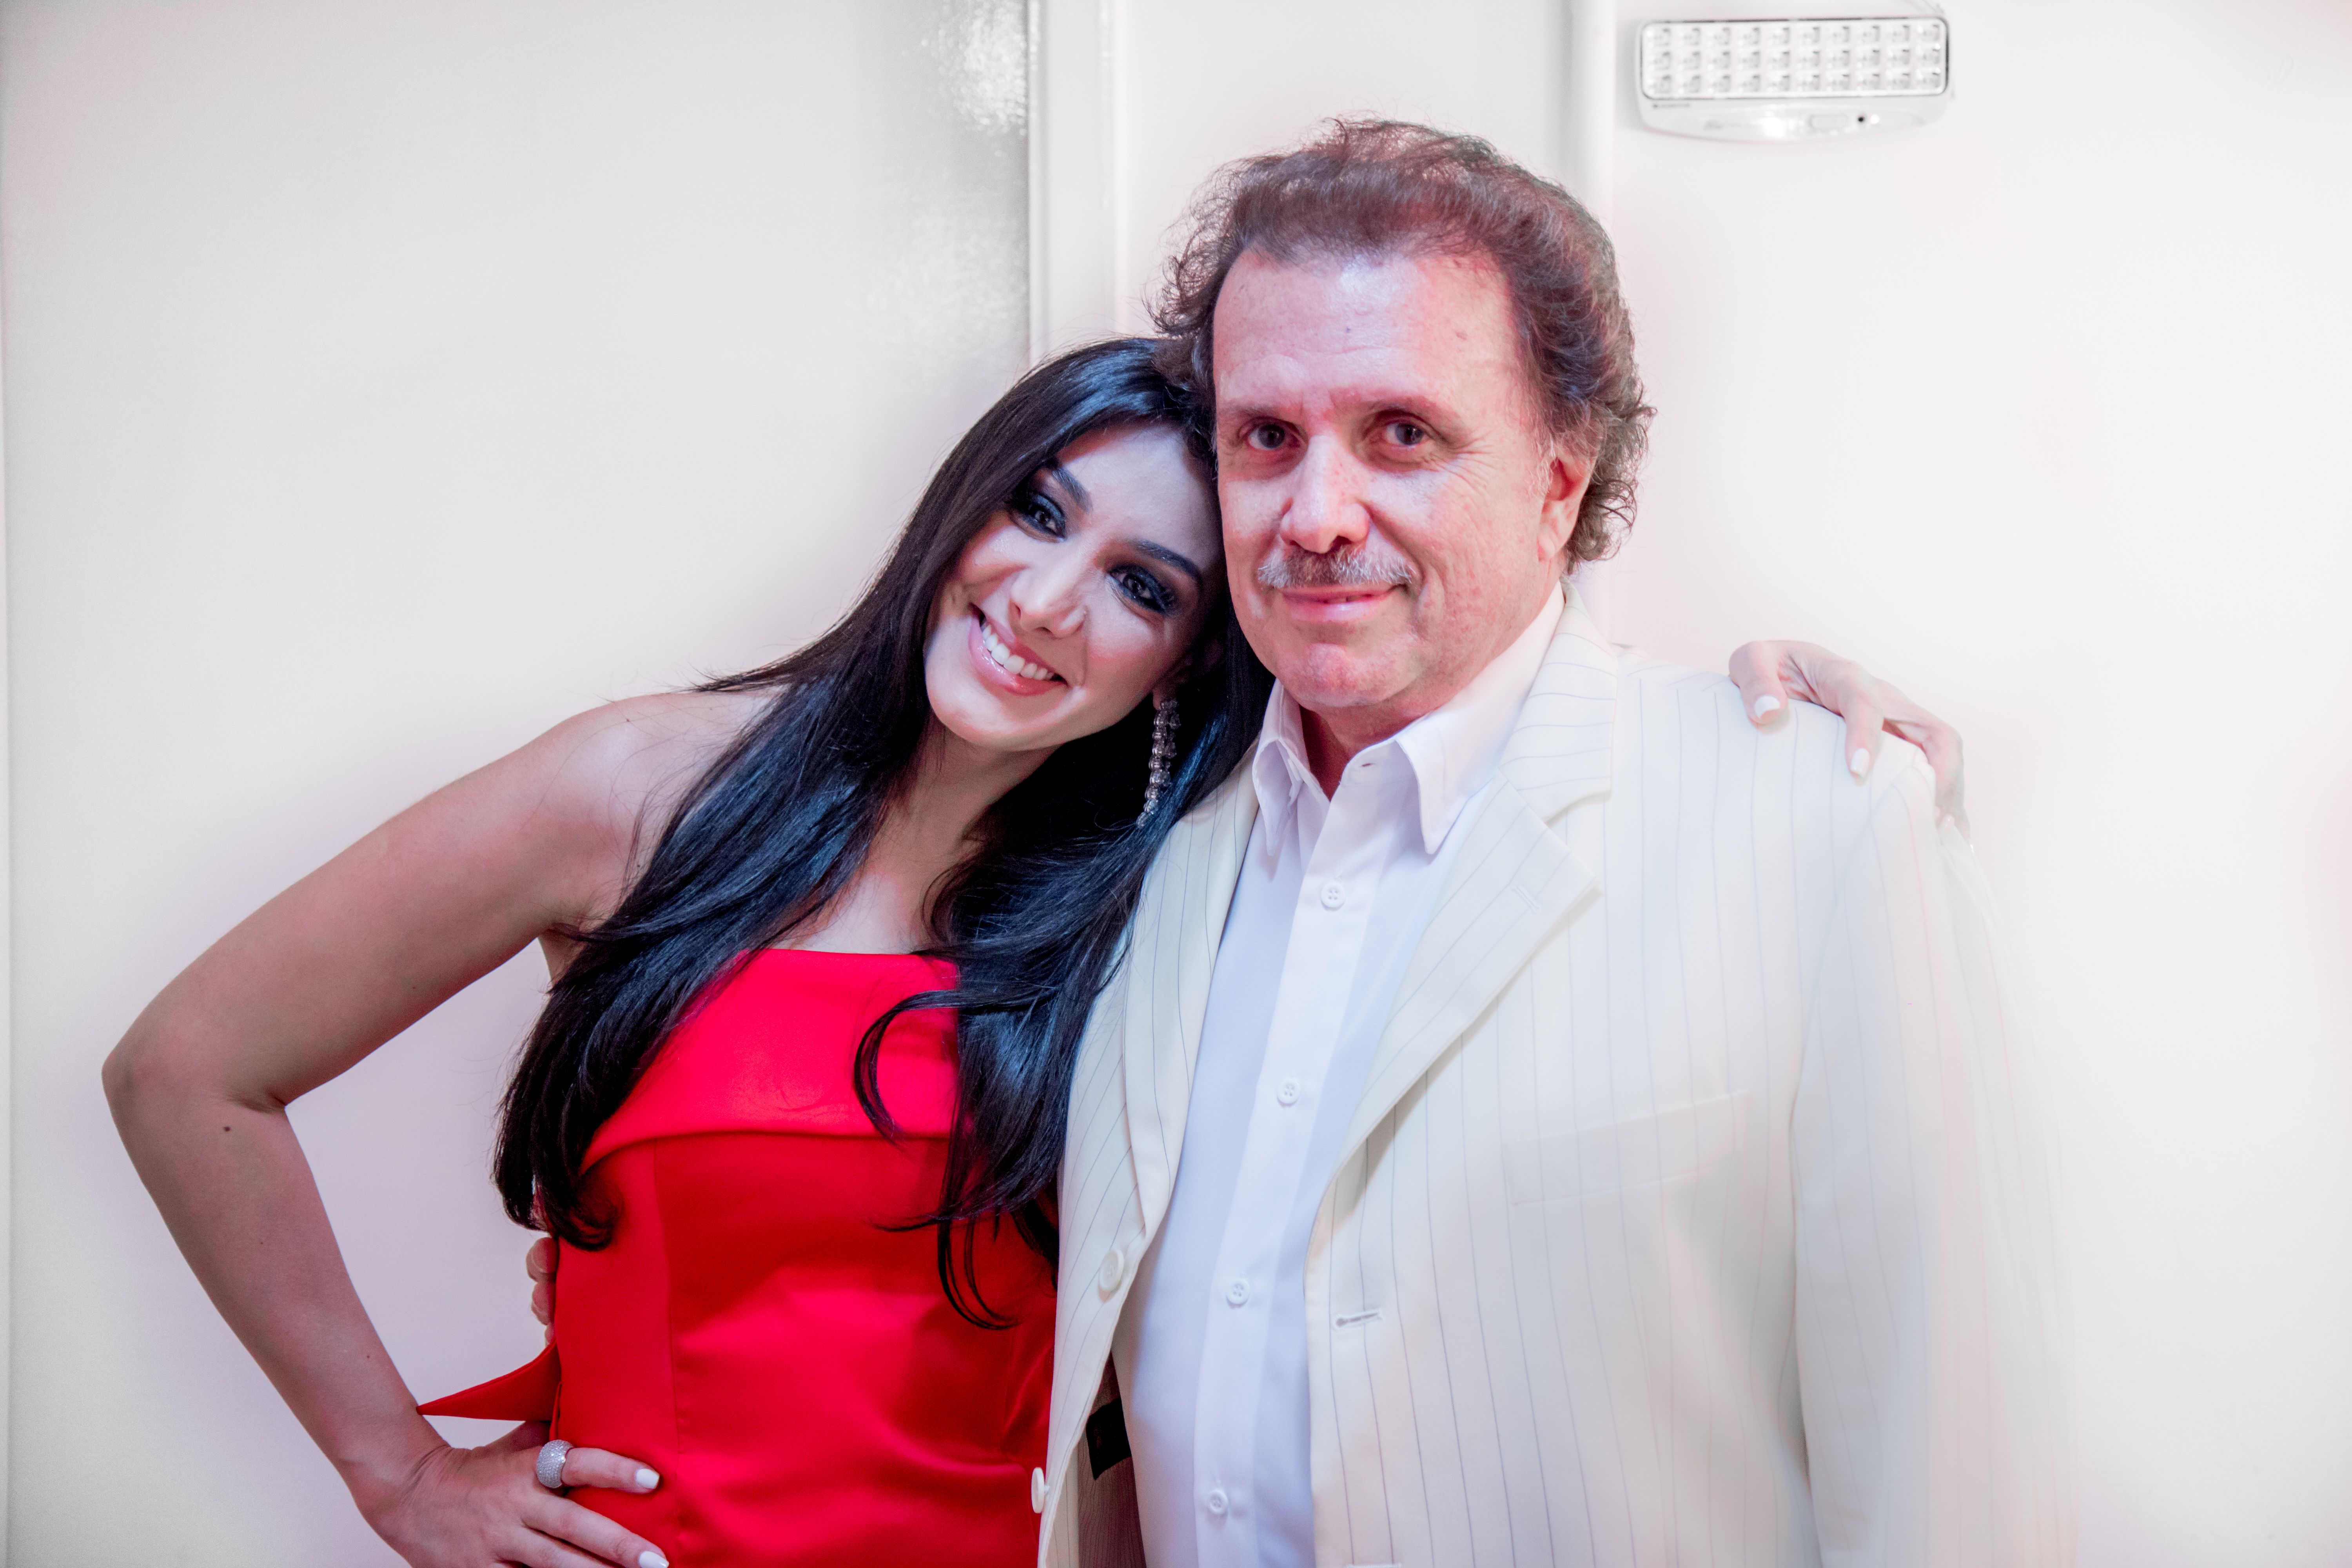 Eduardo Lages, maestro do Rei Roberto Carlos, e Marina Elali apresentam o show “Sucessos do Rei” em Fortaleza